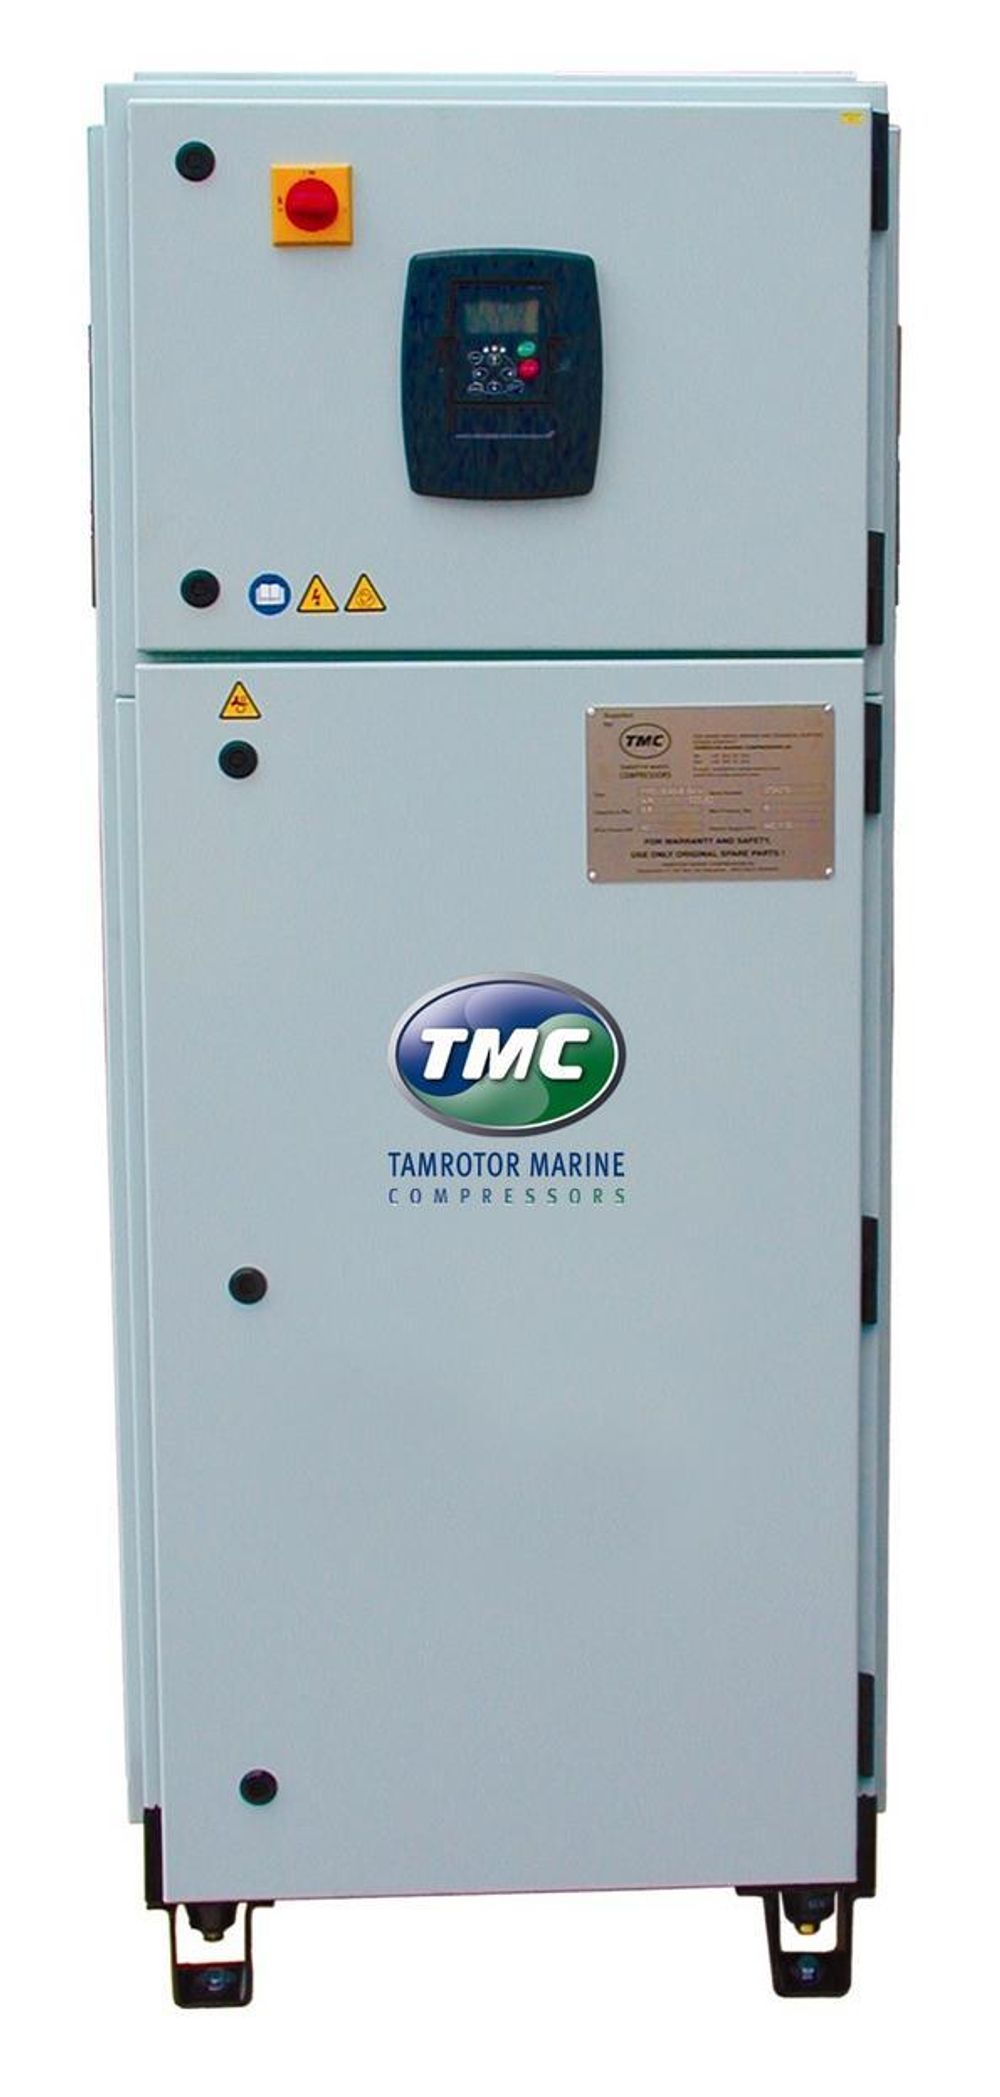 JEVNT OG BILLIG: Den nye Smart Air  kompressoren fra Tamrotor reduserer forbruket betydelig. Investringen kan være innspart på under ett år.FOTO:TMC